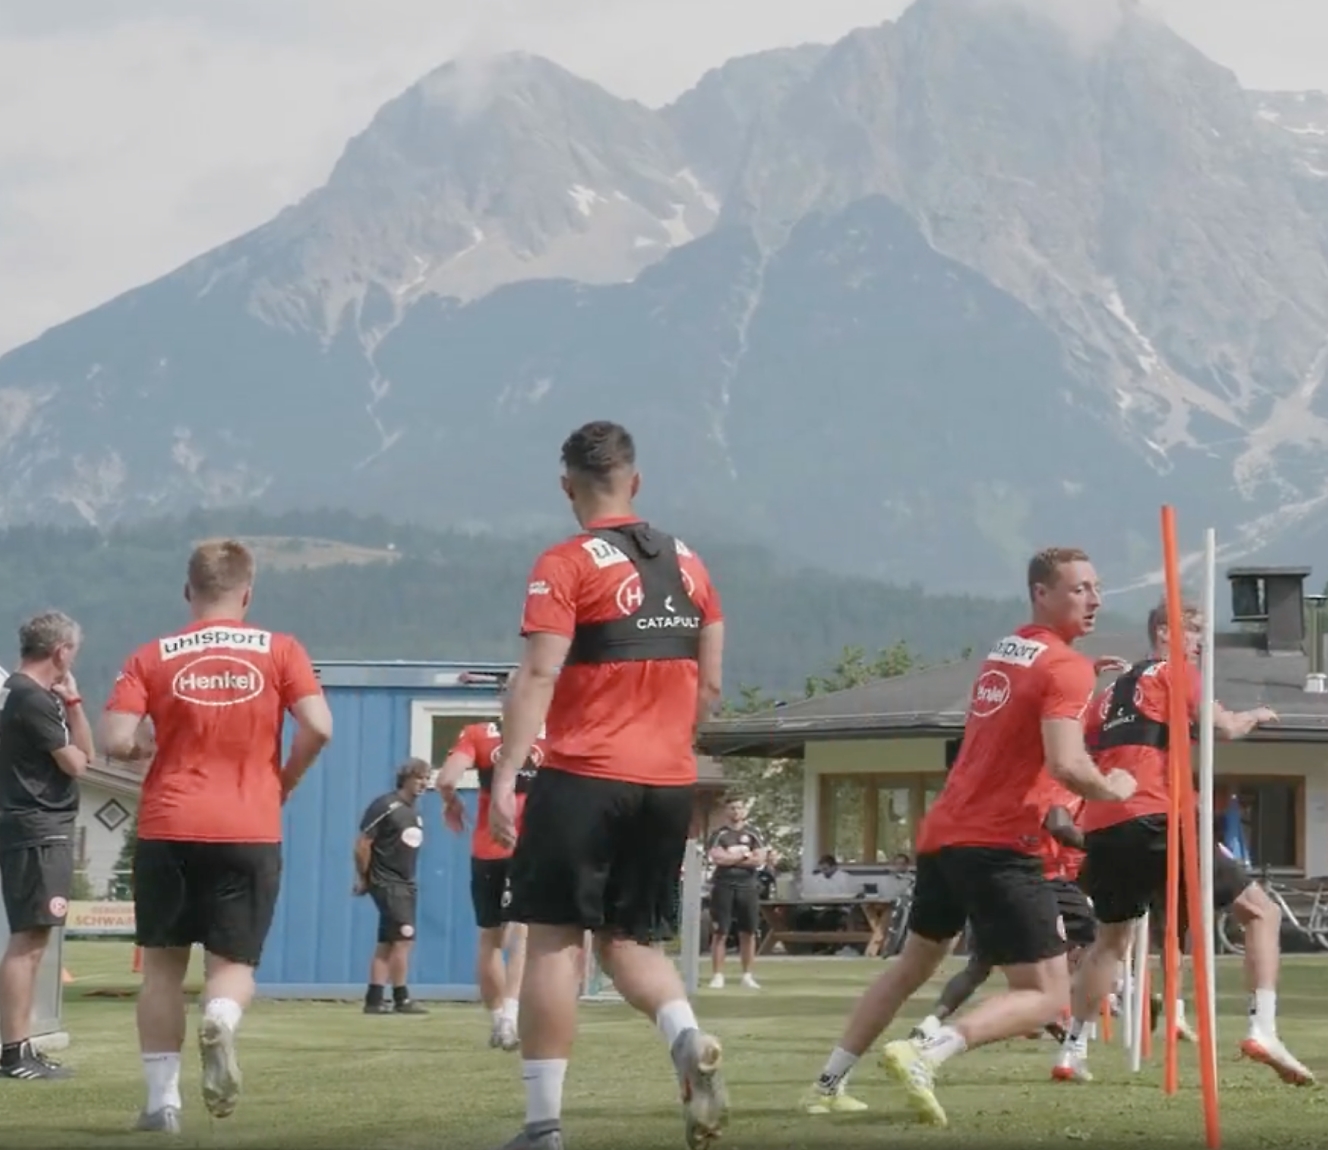 Joueurs de football en pulls rouges s’entraînant à l’extérieur avec des vues sur les montagnes en arrière-plan.